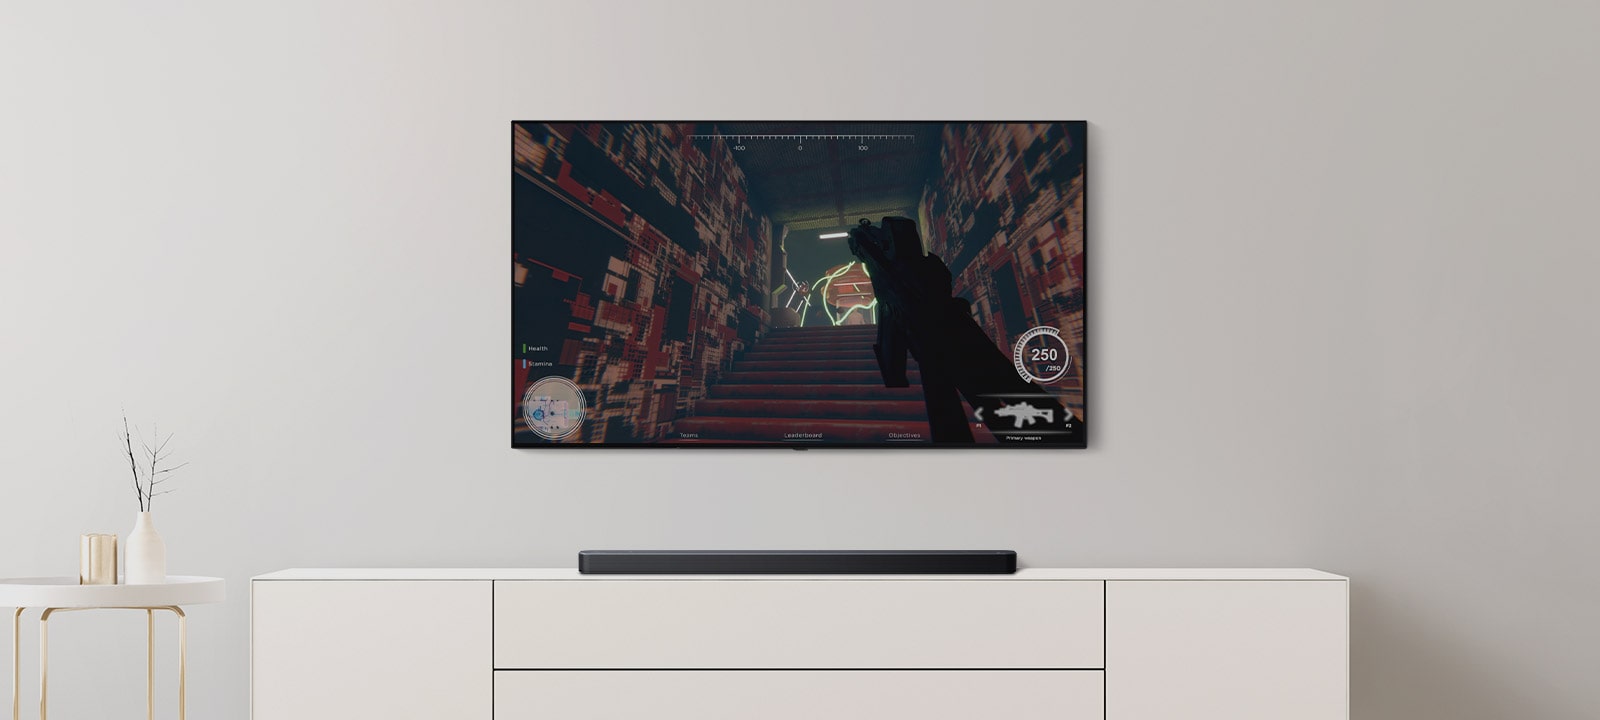 W salonie znajduje się telewizor i soundbar. Na ekranie telewizora wyświetlana jest gra FPS, a po przełączeniu kanału gra w piłkę nożną (odtwarzanie materiału wideo).